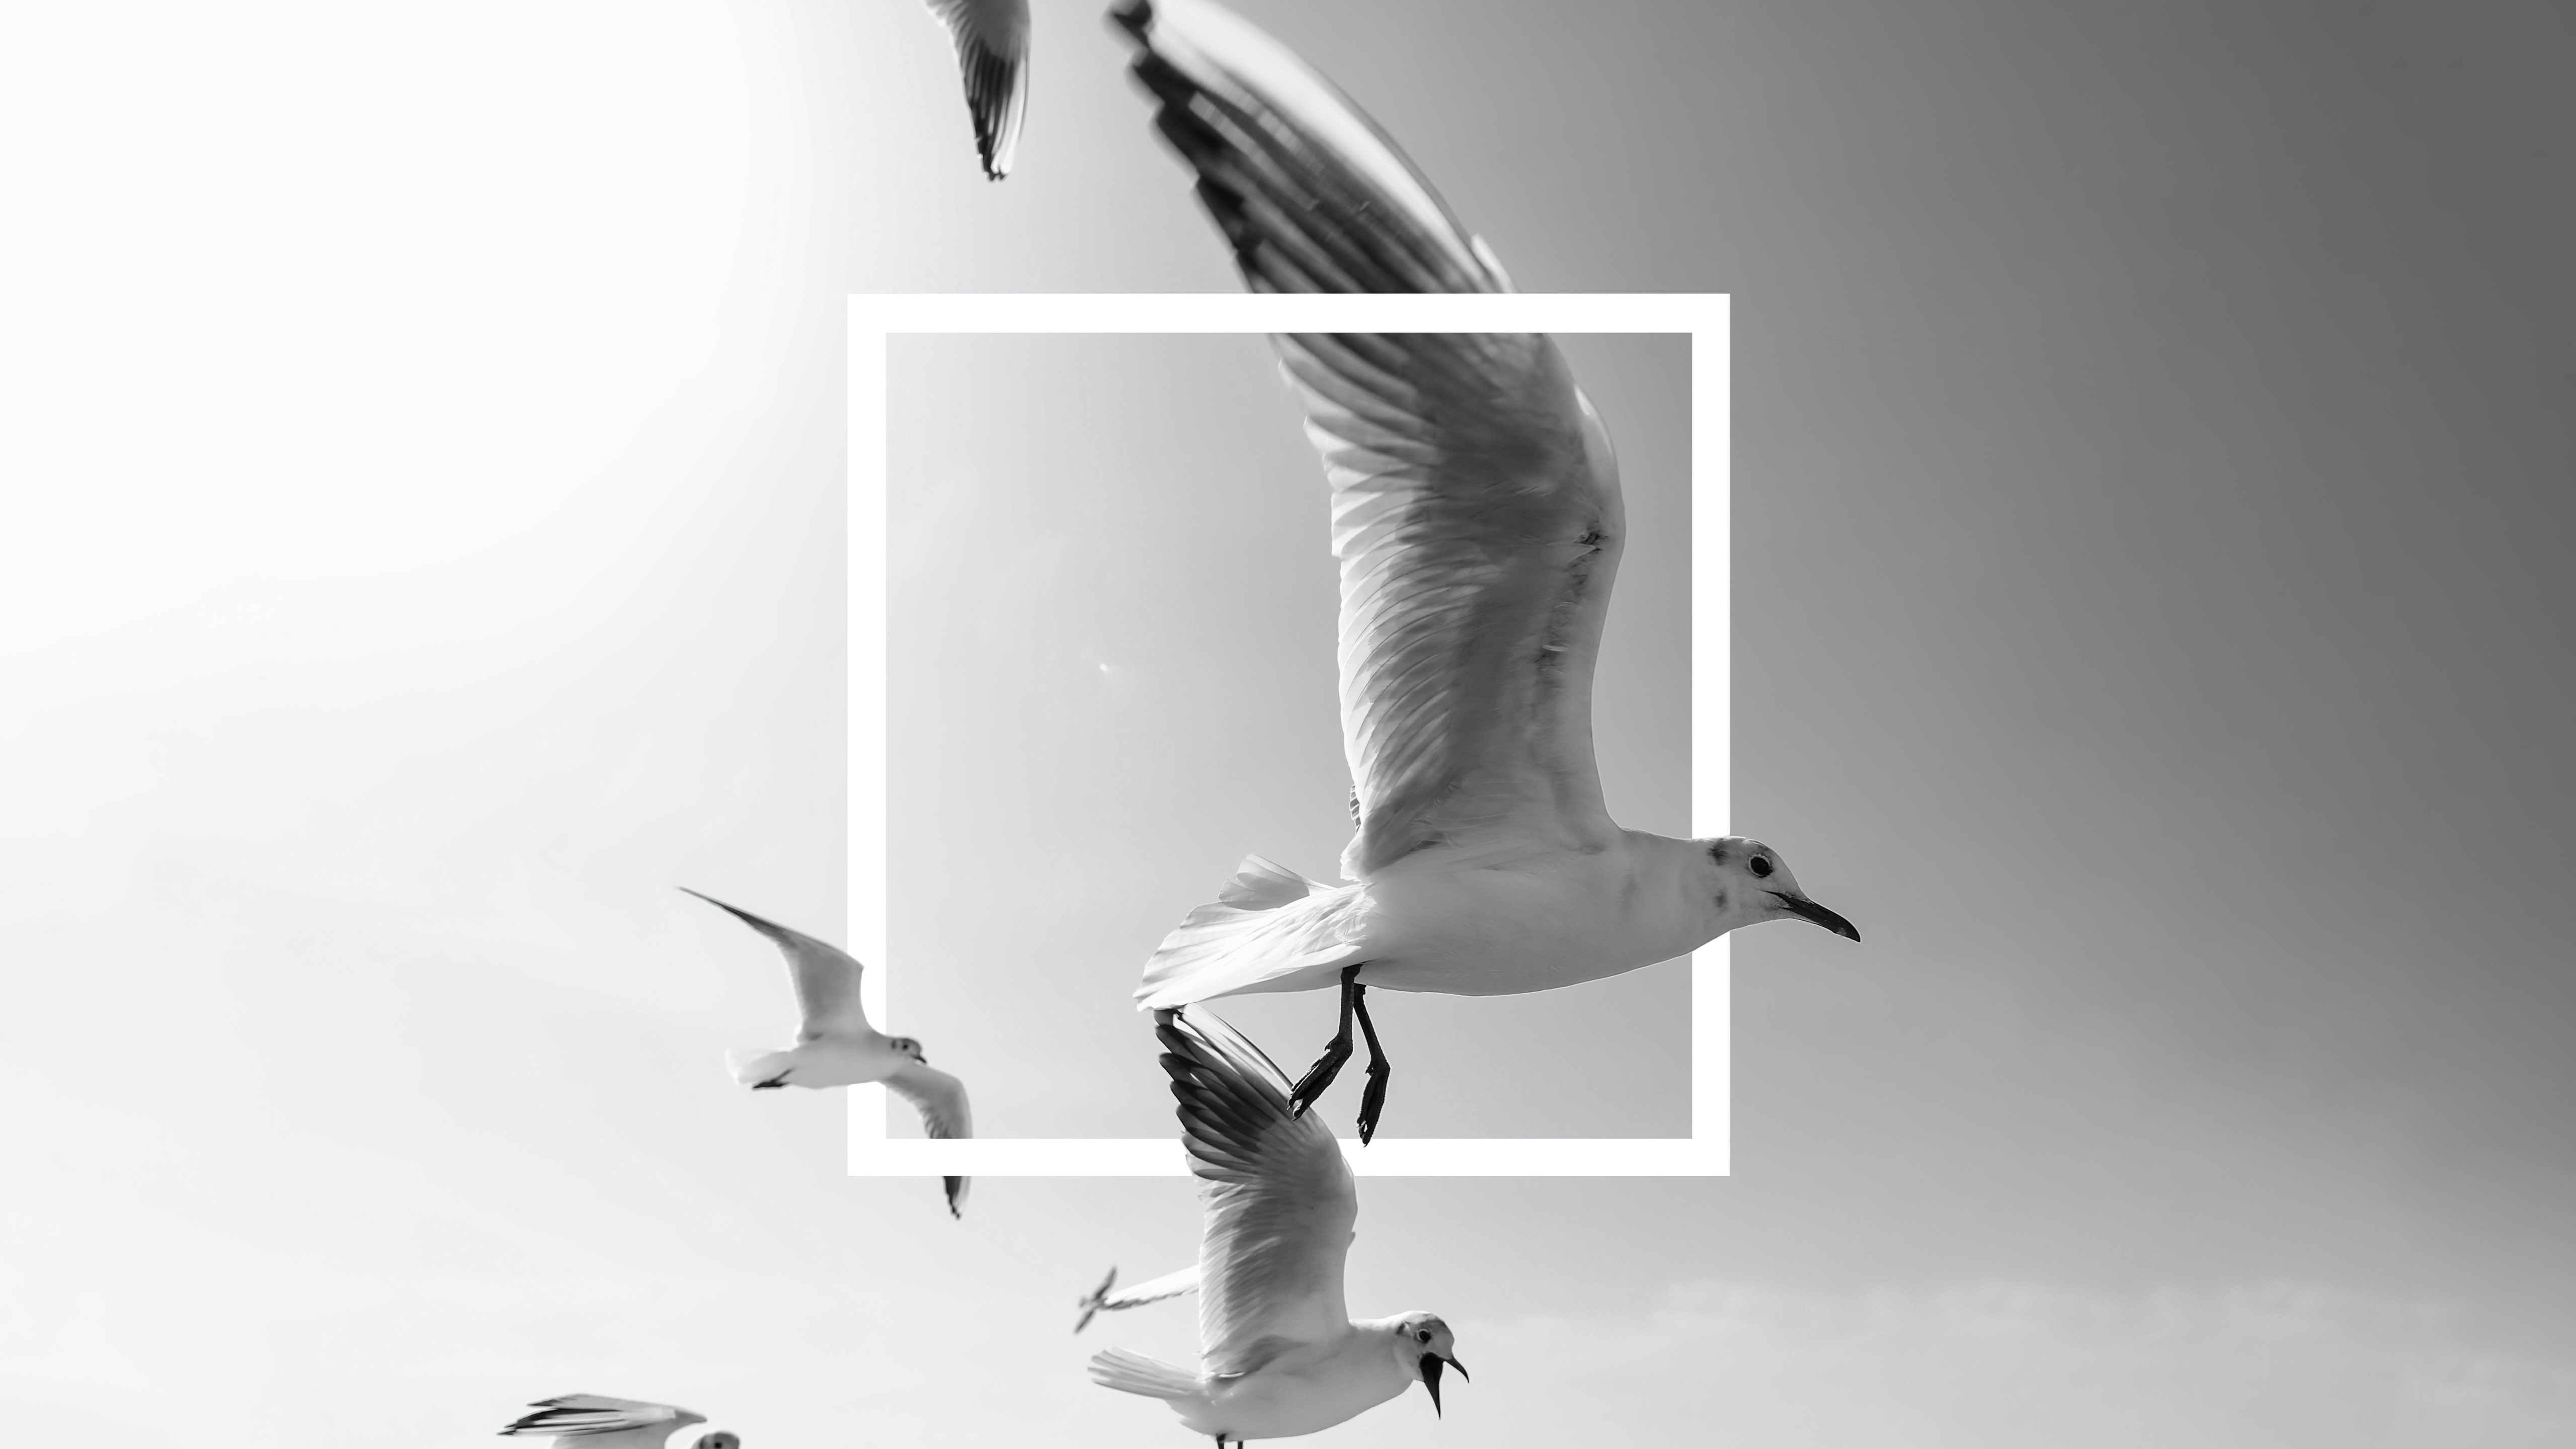 HD wallpaper, Flying Birds, Seagulls, Frame, Bingkai, Black And White, 5K, Monochrome